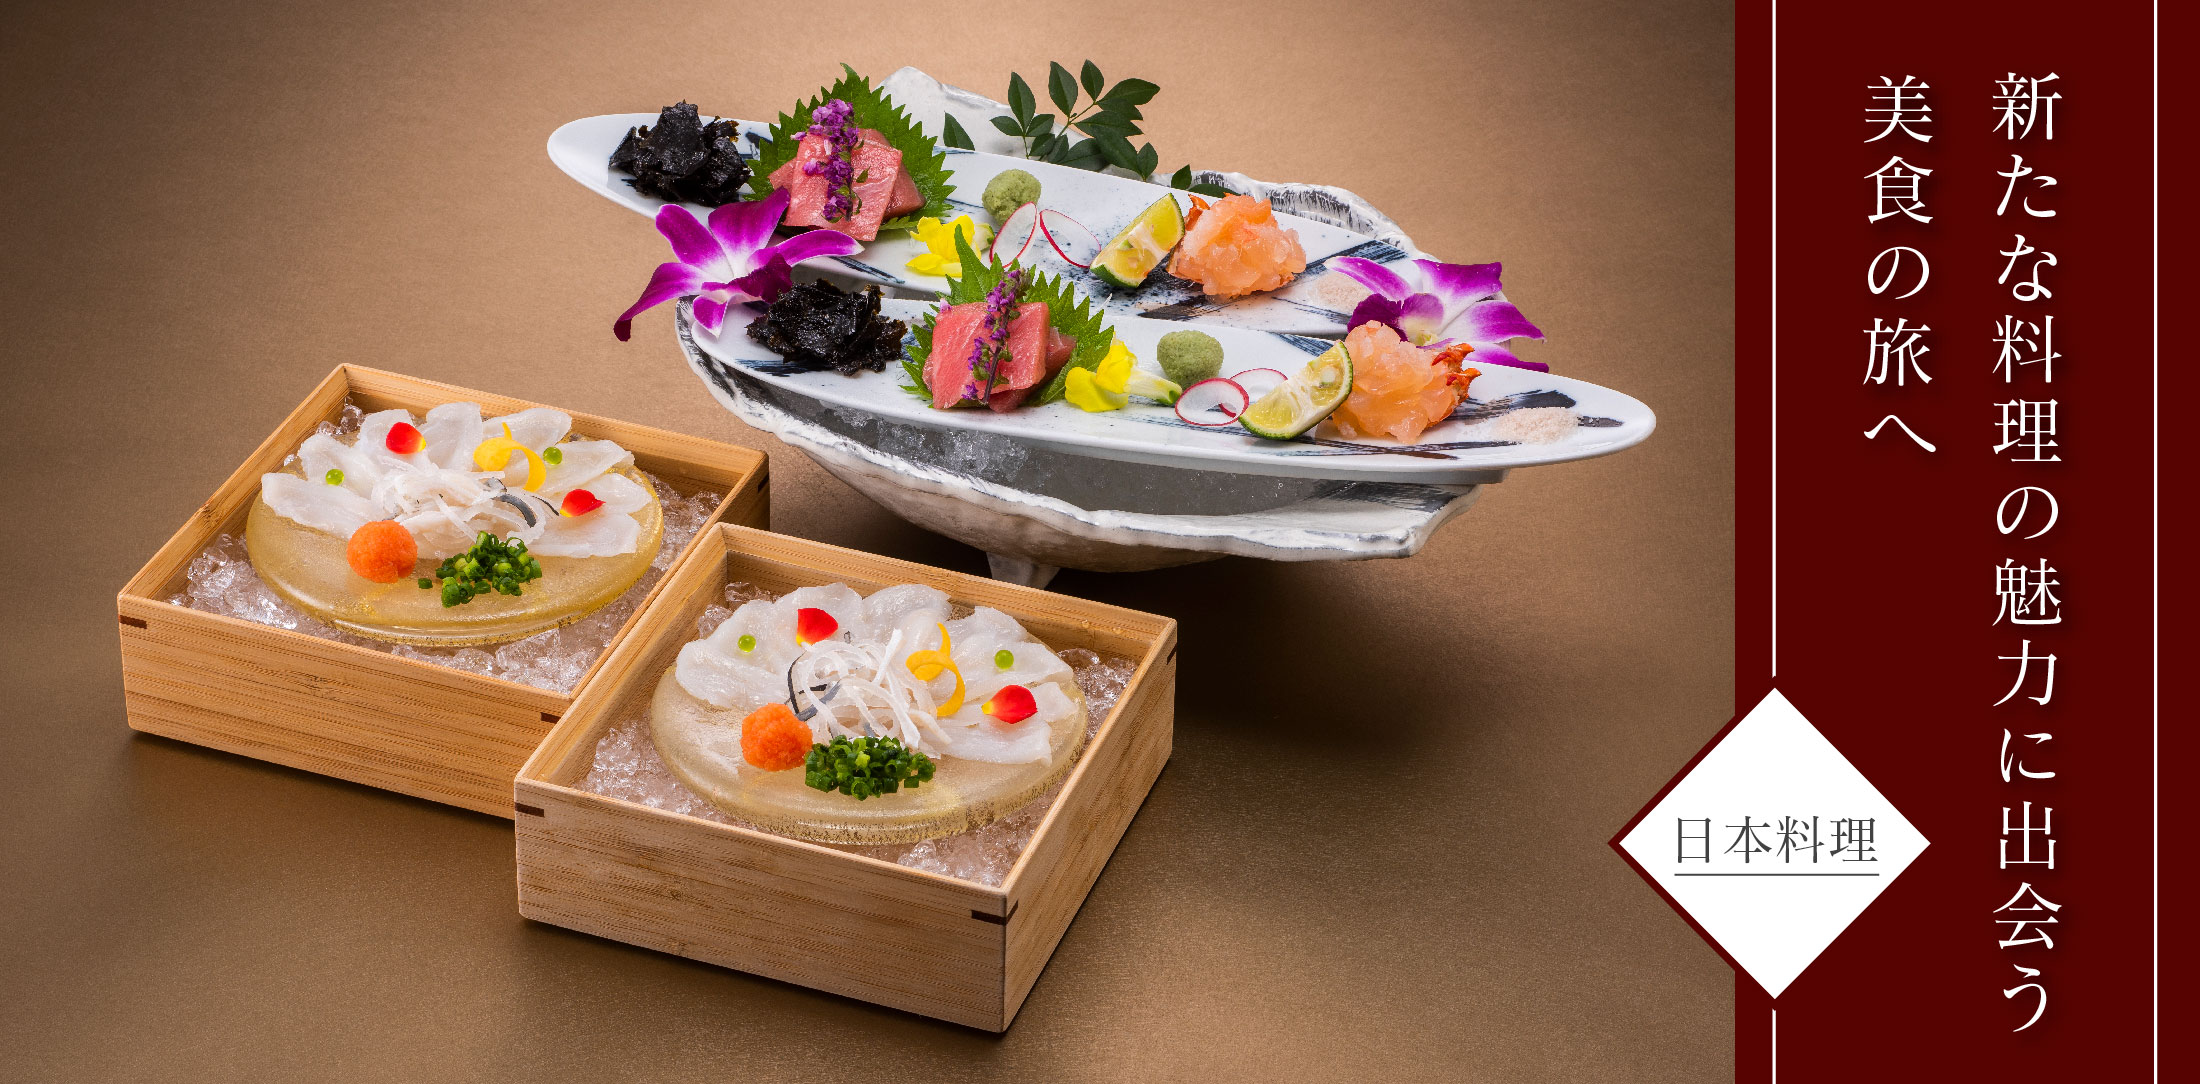 新たな料理の魅力に出会う美食の旅へ－日本料理－